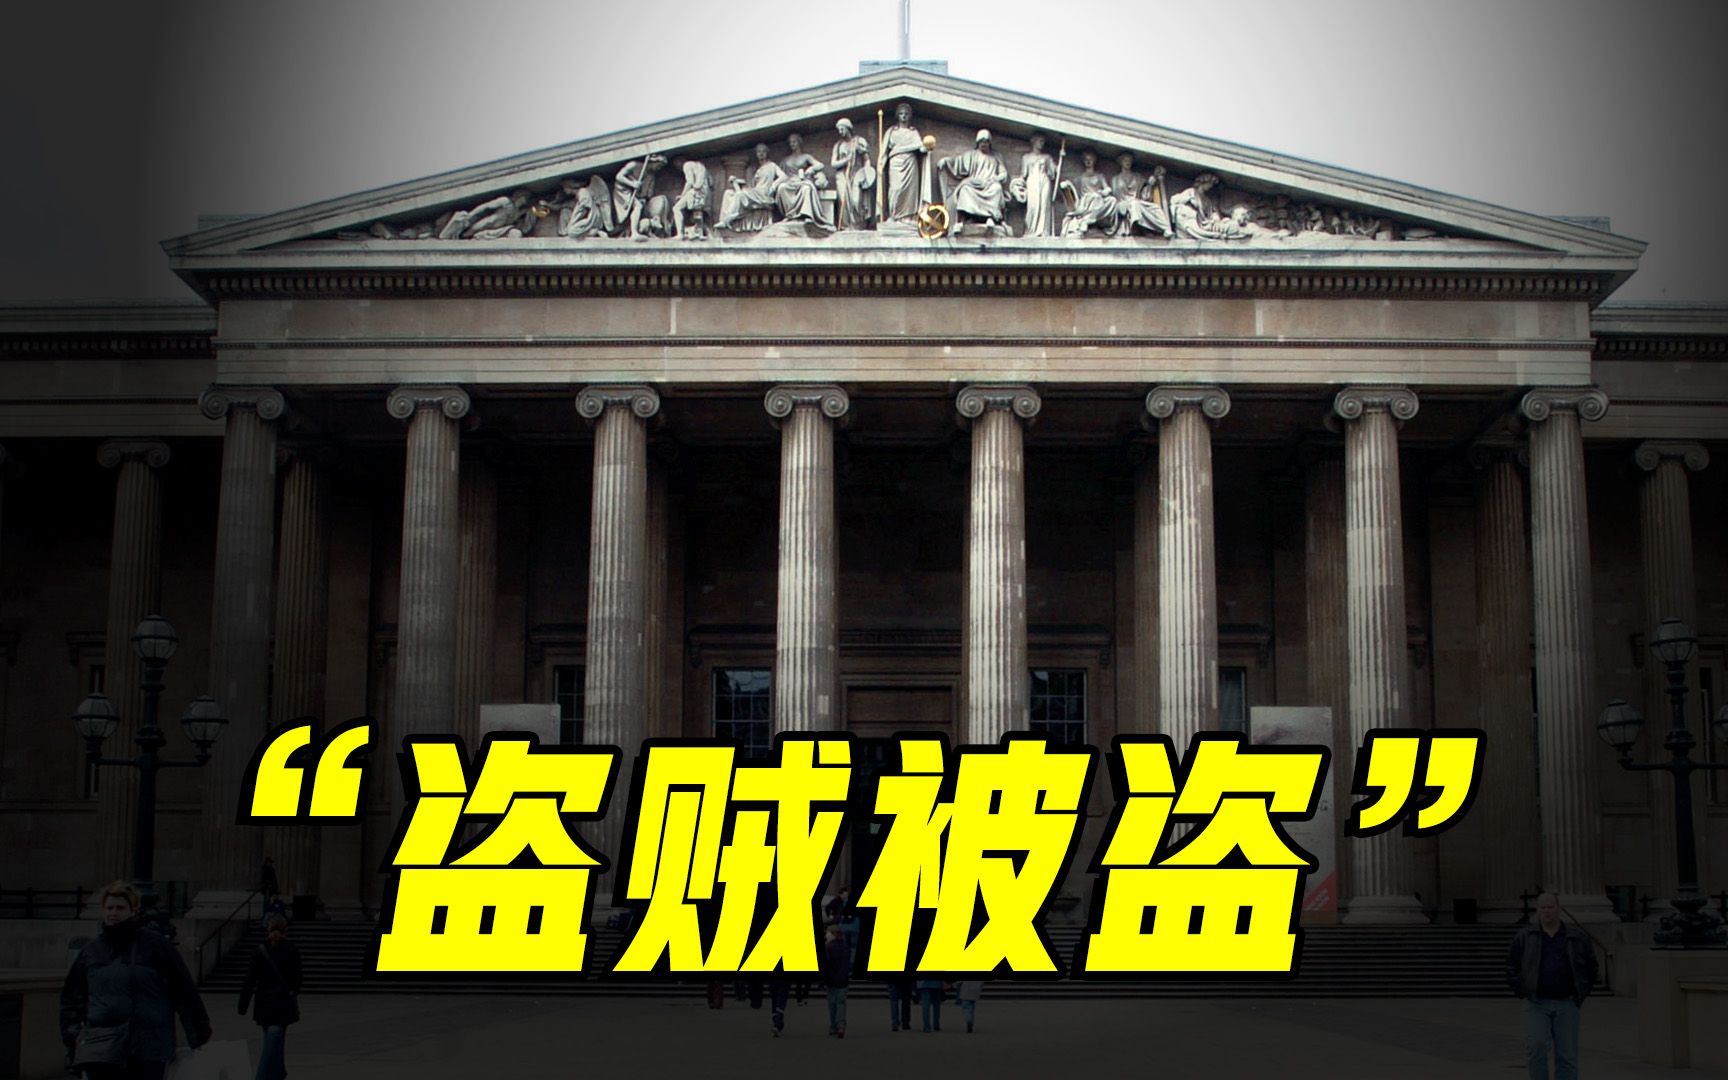 大英博物馆还有没有能力管理从各国掠夺来的文物？